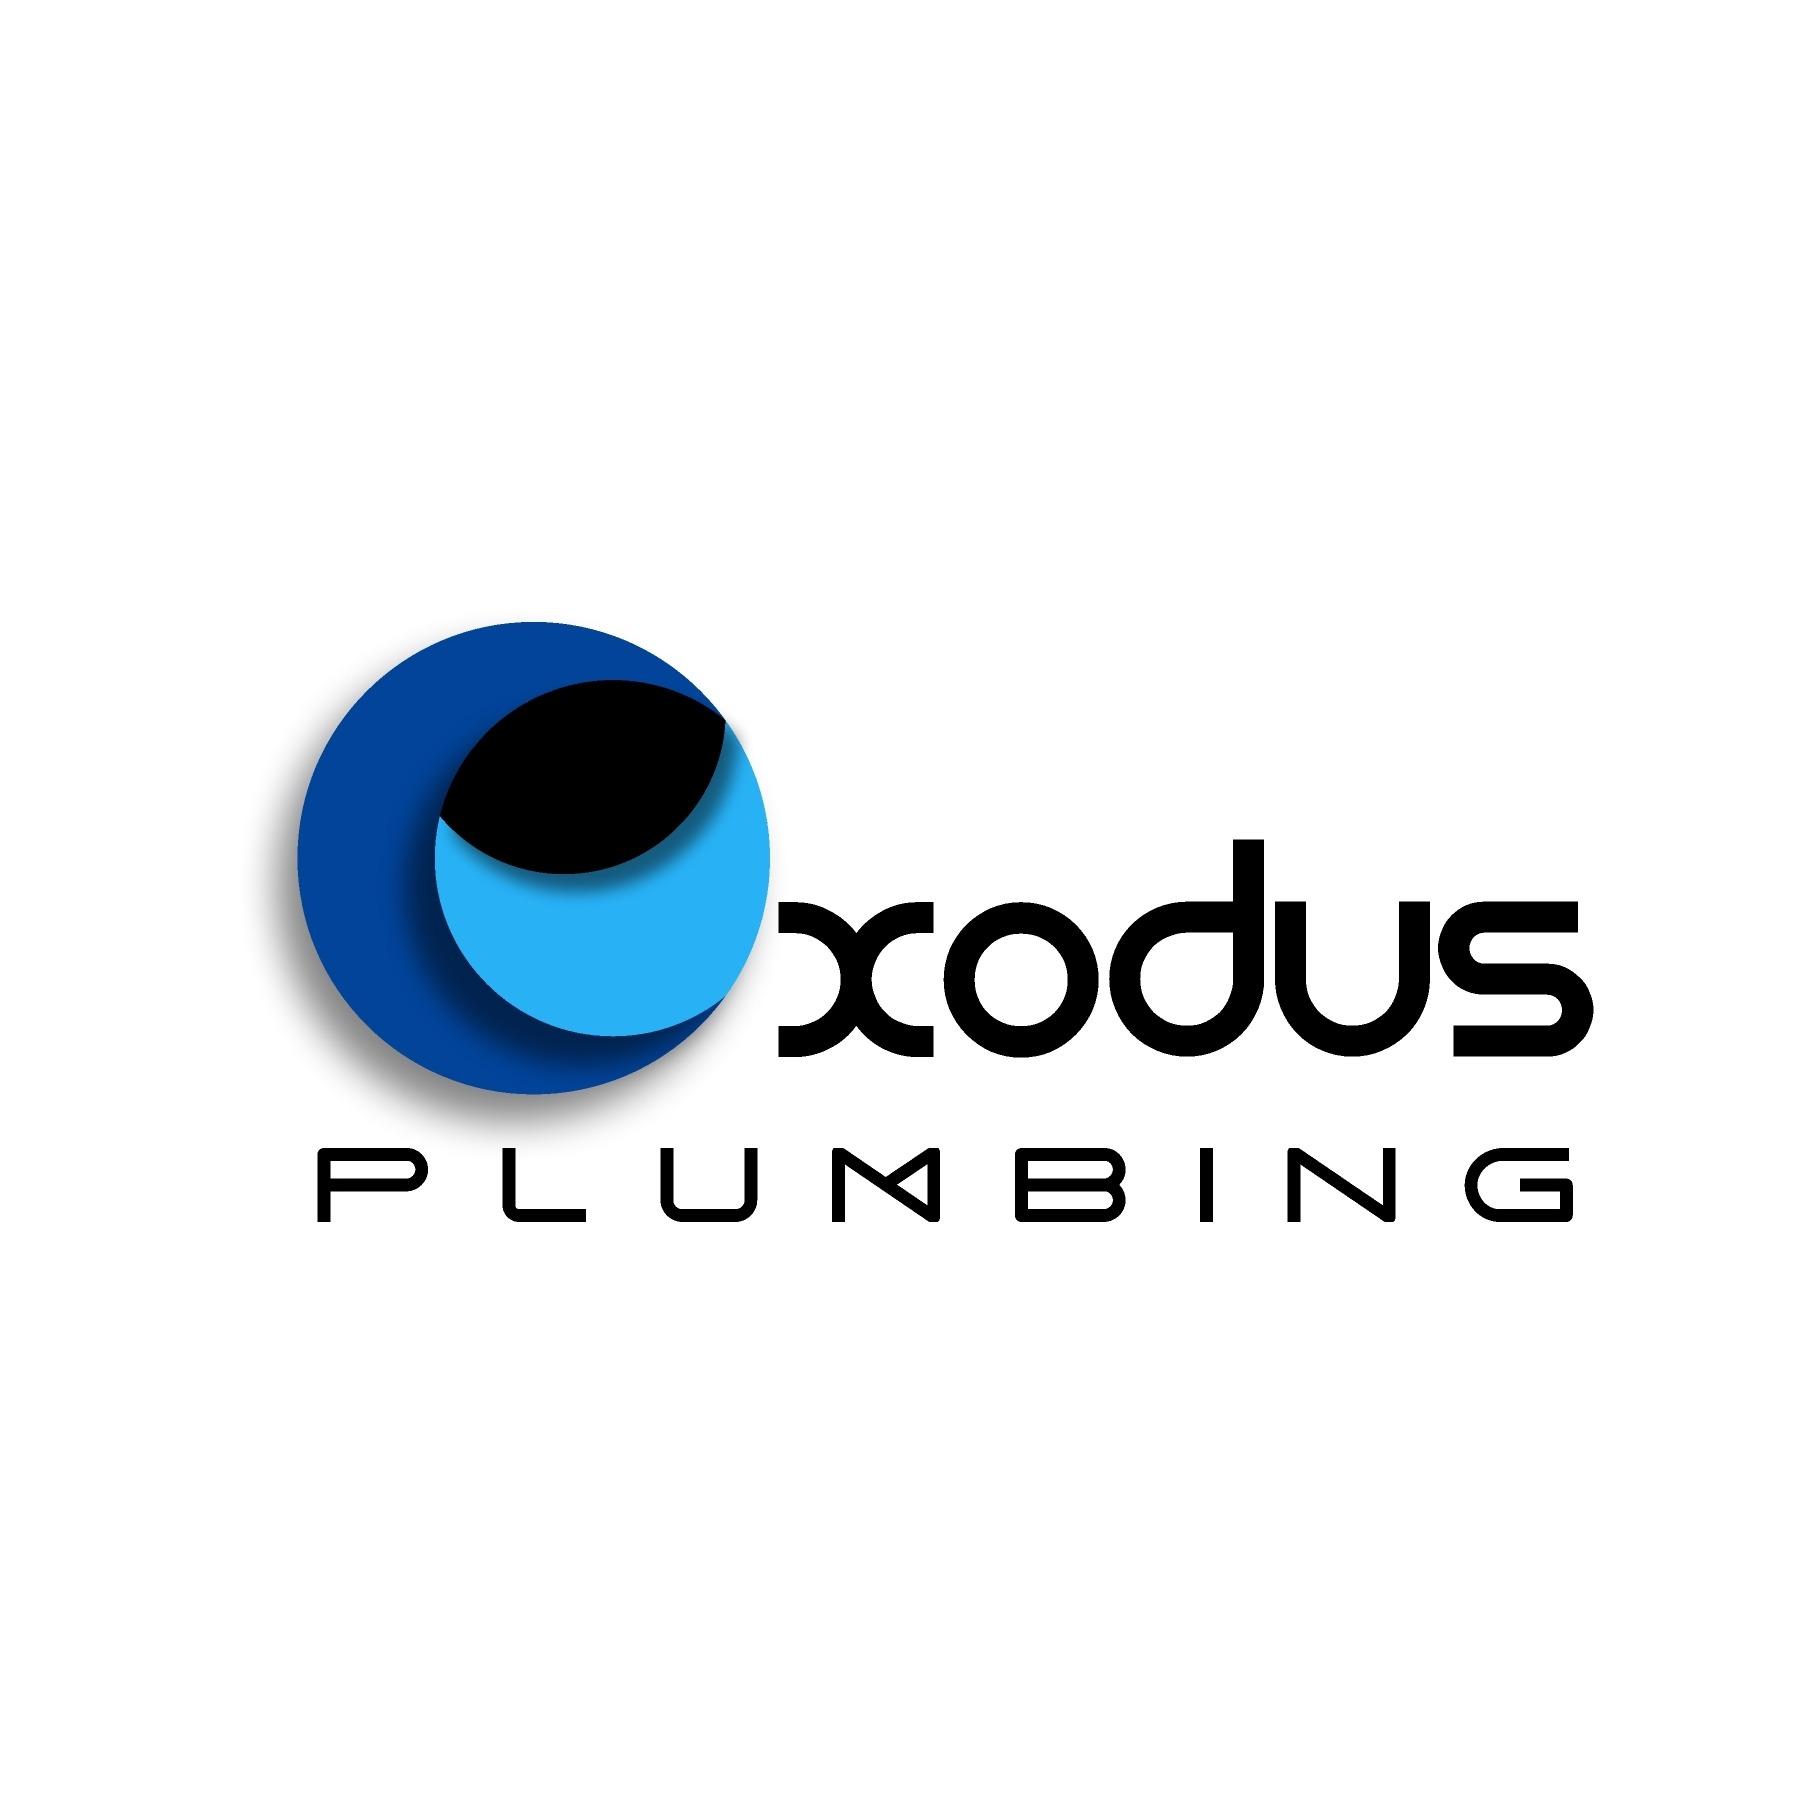 Exodus Plumbing, Inc